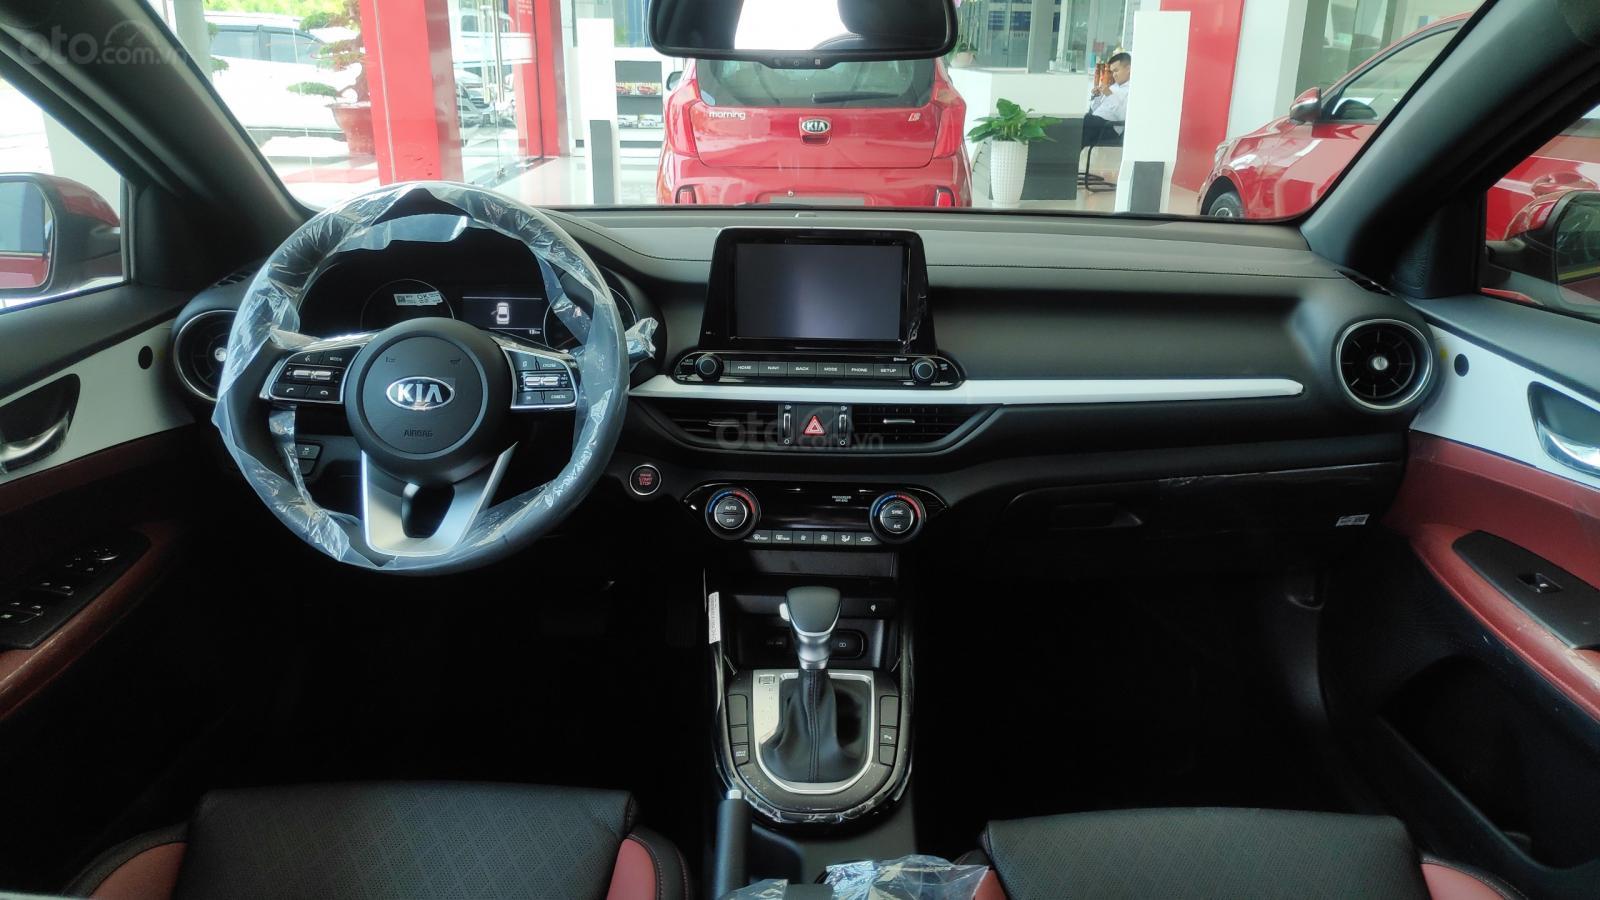 Kia Cerato 1.6MT 2019 - Hot: Kia Cerato 2019 full option, giá ưu đãi, khuyến mãi hấp dẫn, liên hệ Ms CA - 0969 892 179